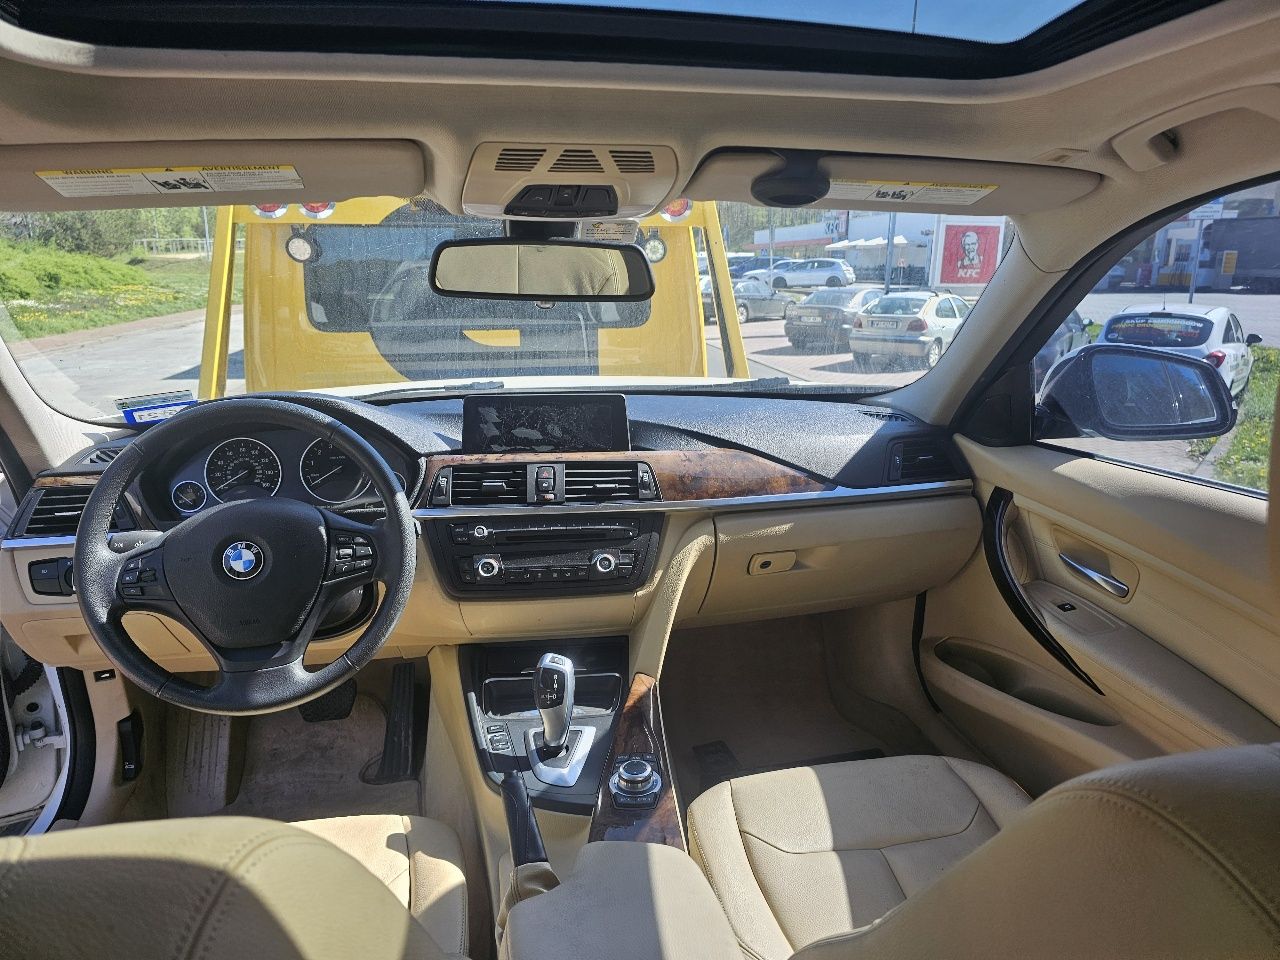 BMW 335i Activehybryd sprzedaż zamiana uszkodzona oclona !!